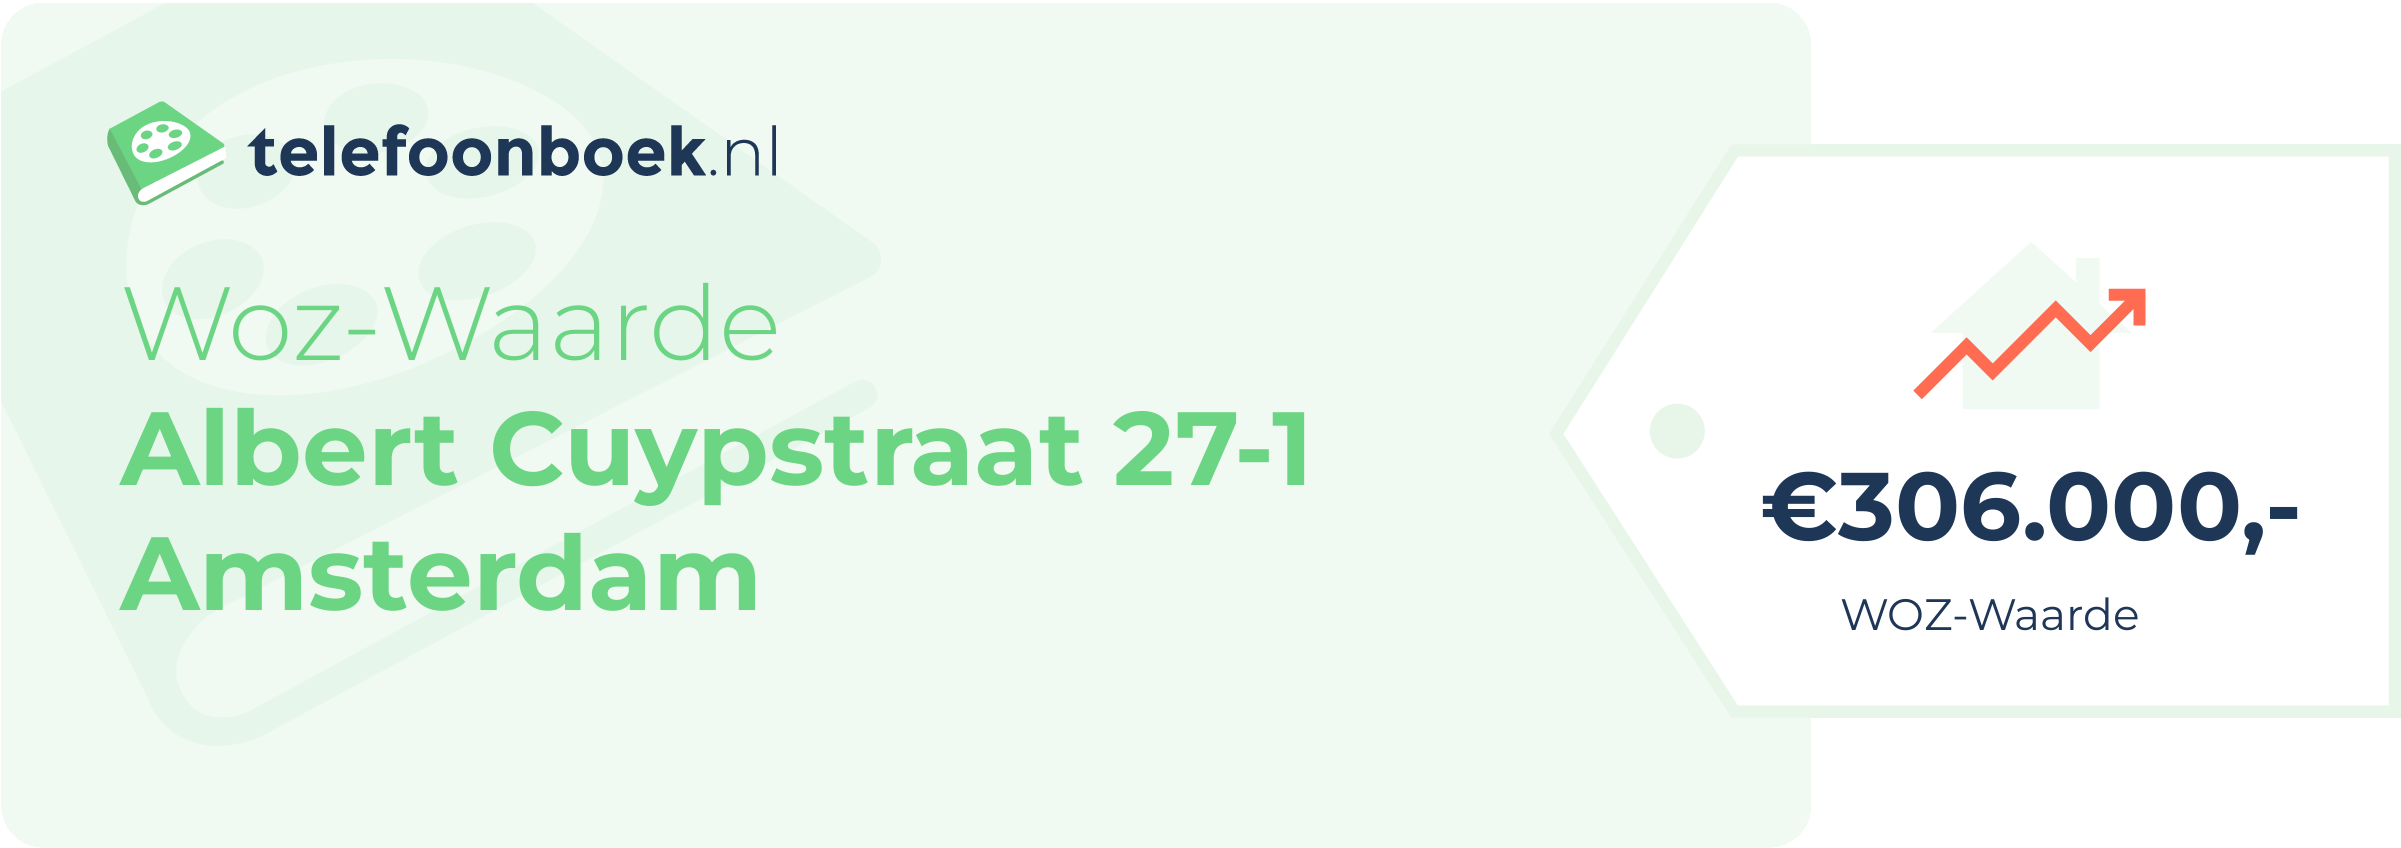 WOZ-waarde Albert Cuypstraat 27-1 Amsterdam